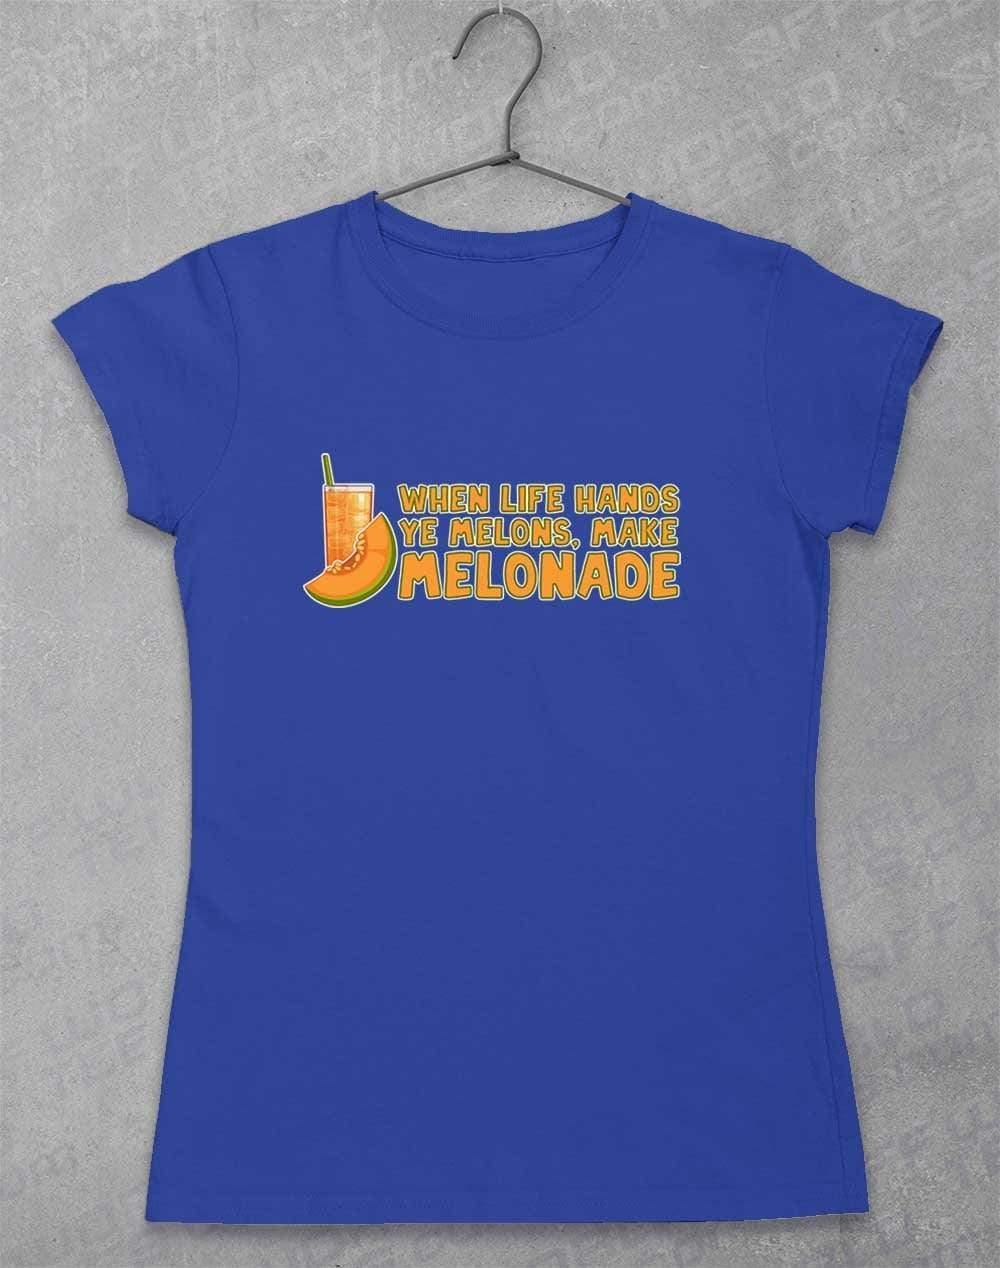 Make Melonade Womens T-Shirt 8-10 / Royal  - Off World Tees